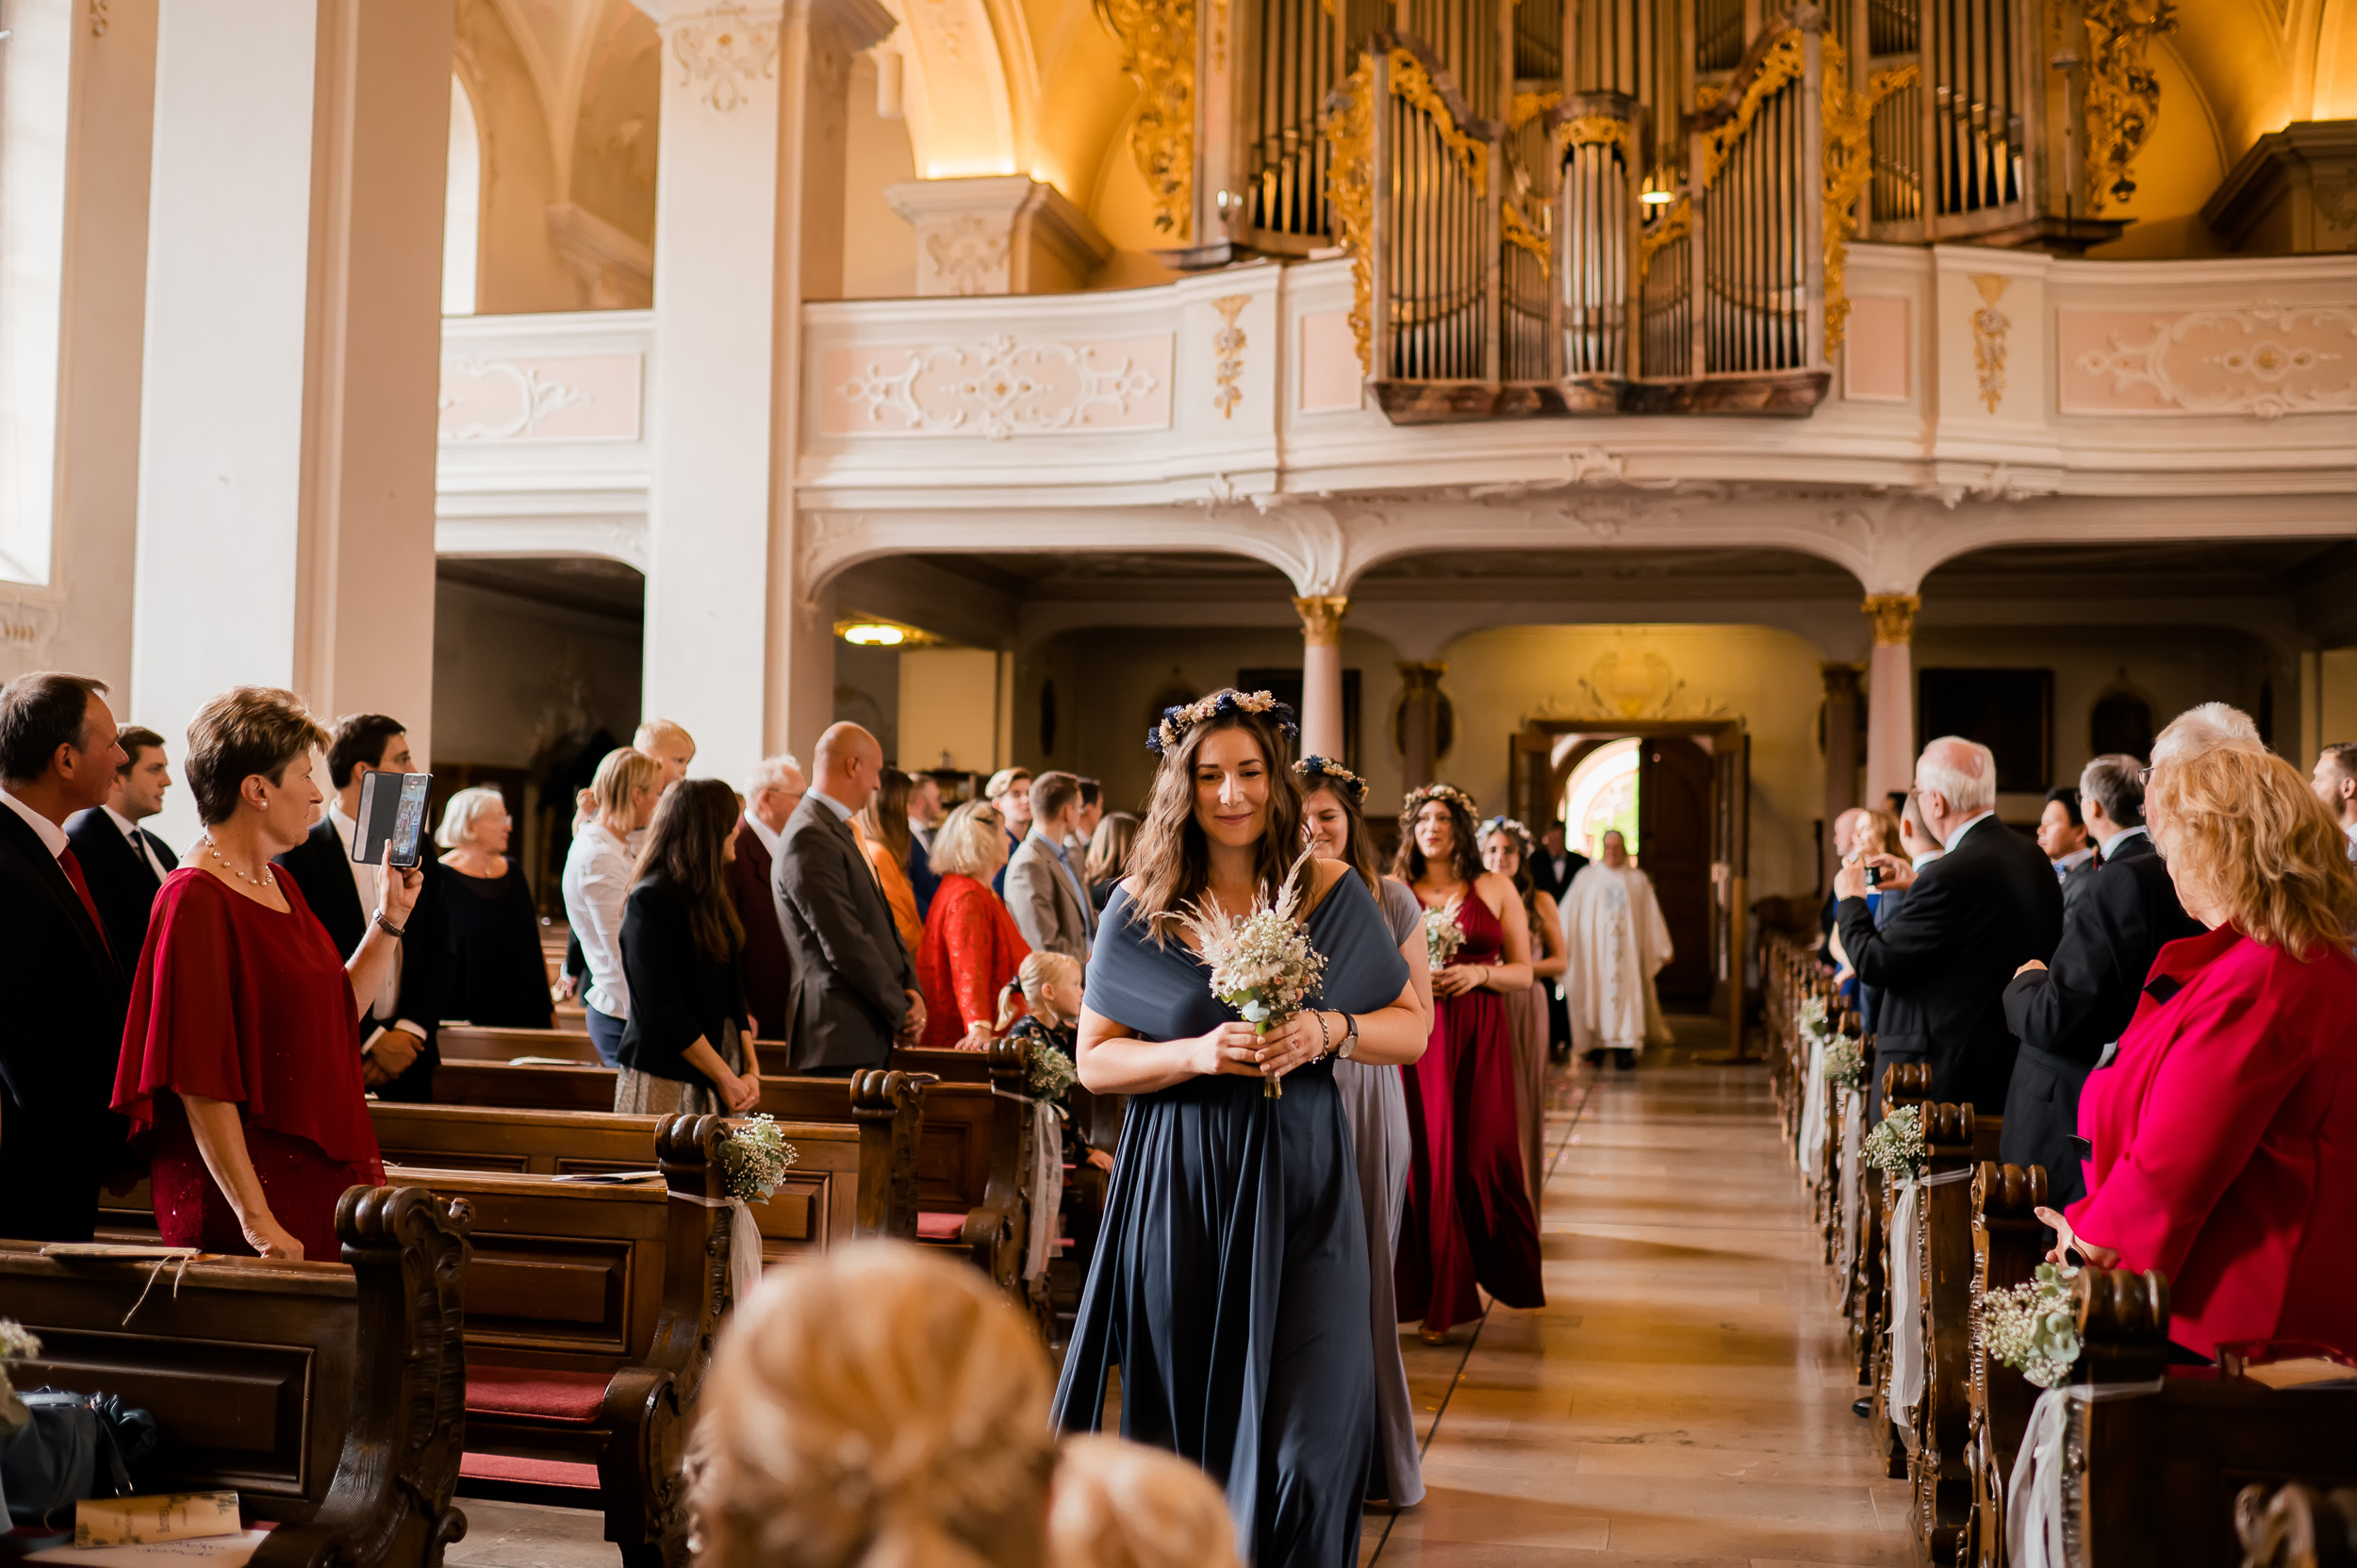 Die besten Freunde der Braut kommen mit einem Blumenstrauß in der Hand in die Wallfahrtskirche Todtmoos, sie tragen schöne Kleider im Boho-Stil.